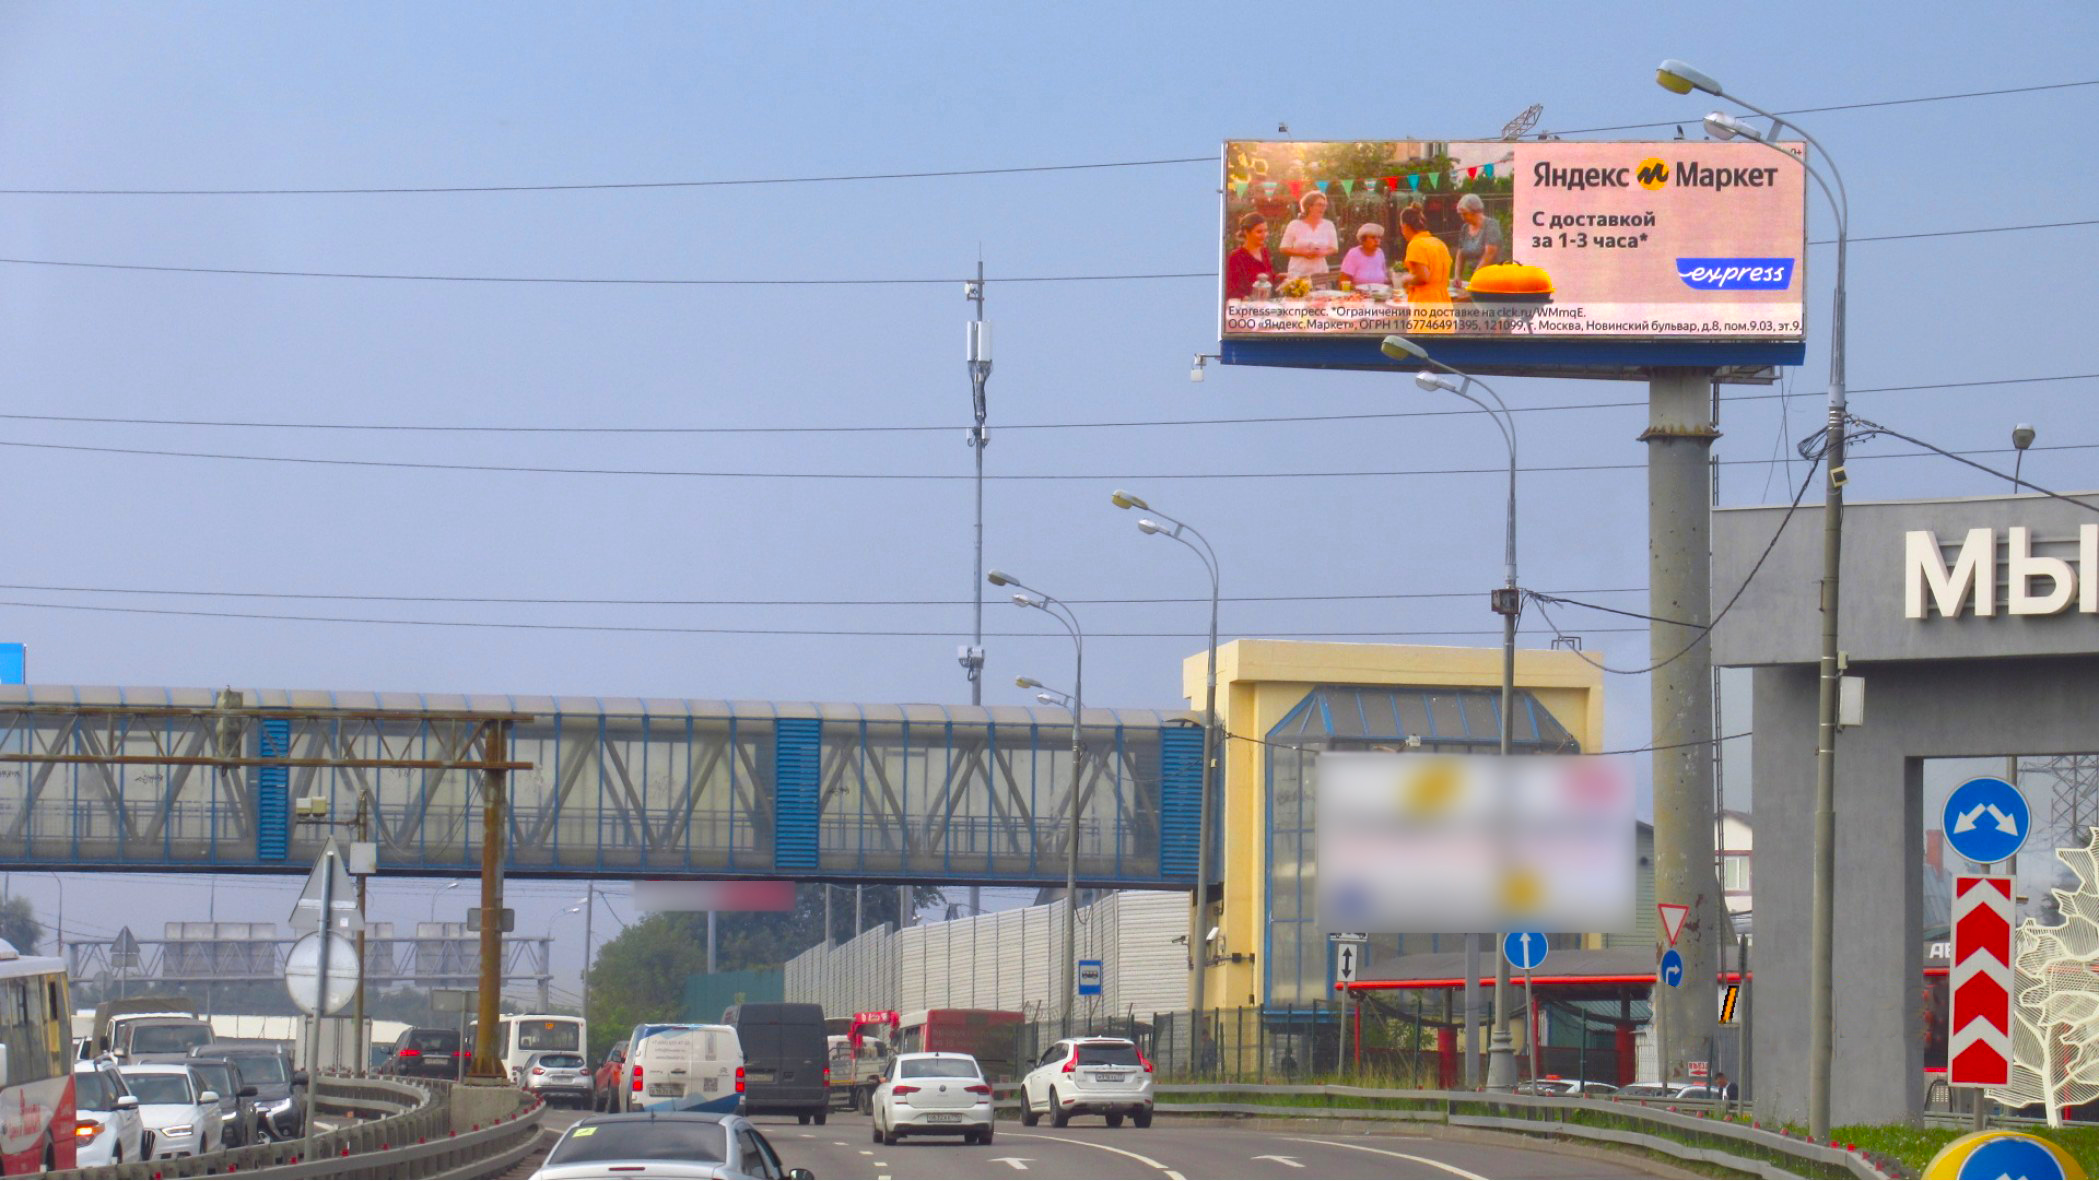 Кейс наружной рекламы  Яндекс Маркет 3